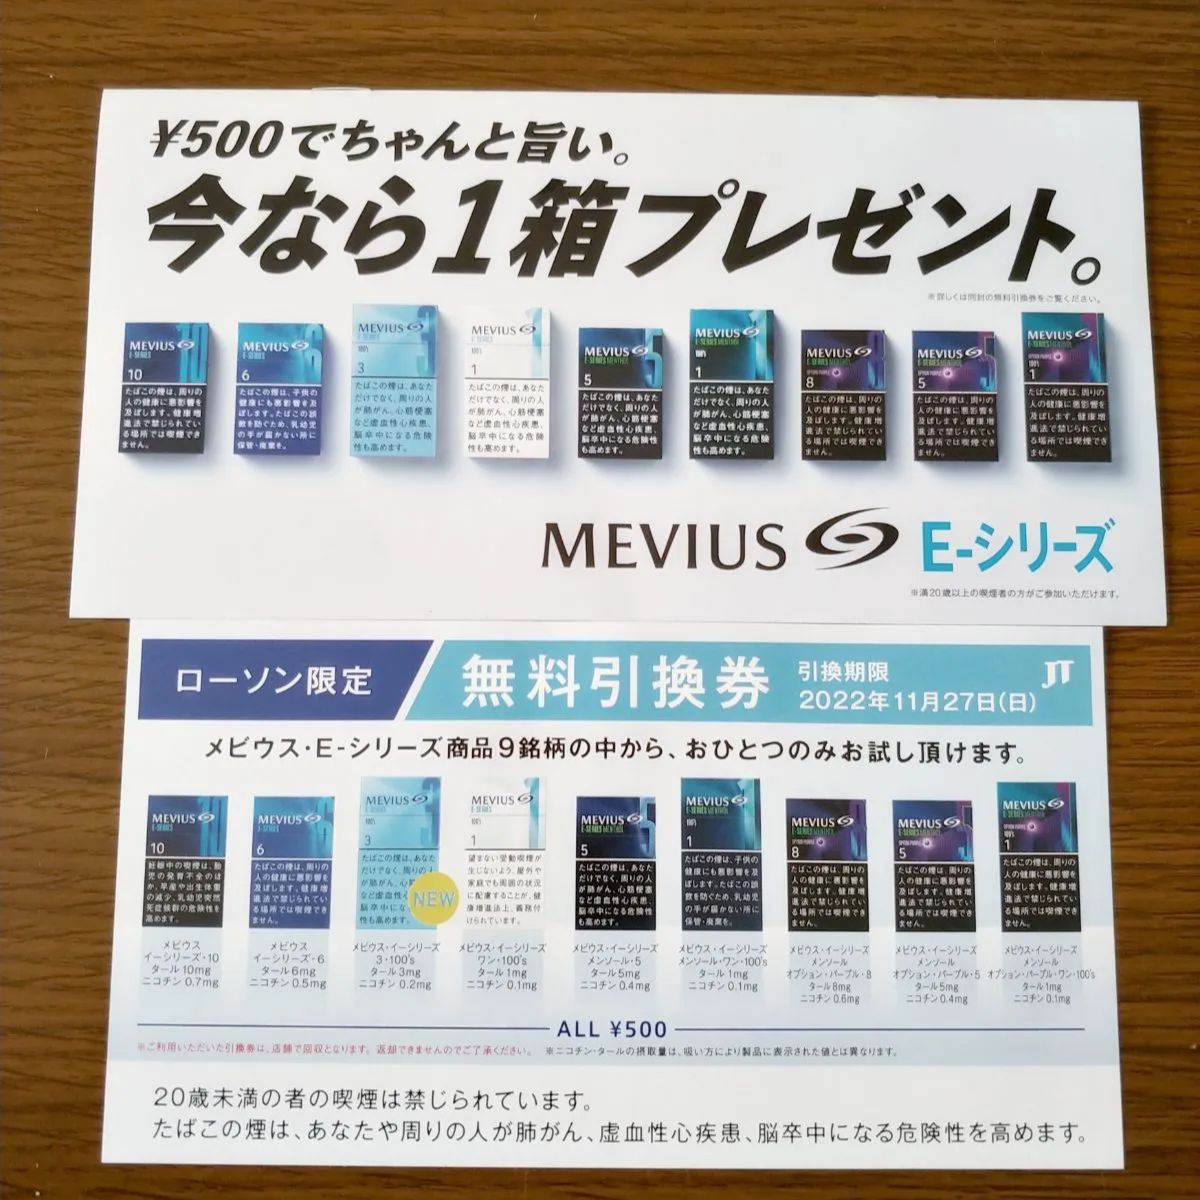 メビウス Ｅシリーズ タバコ無料引換券 - メルカリ